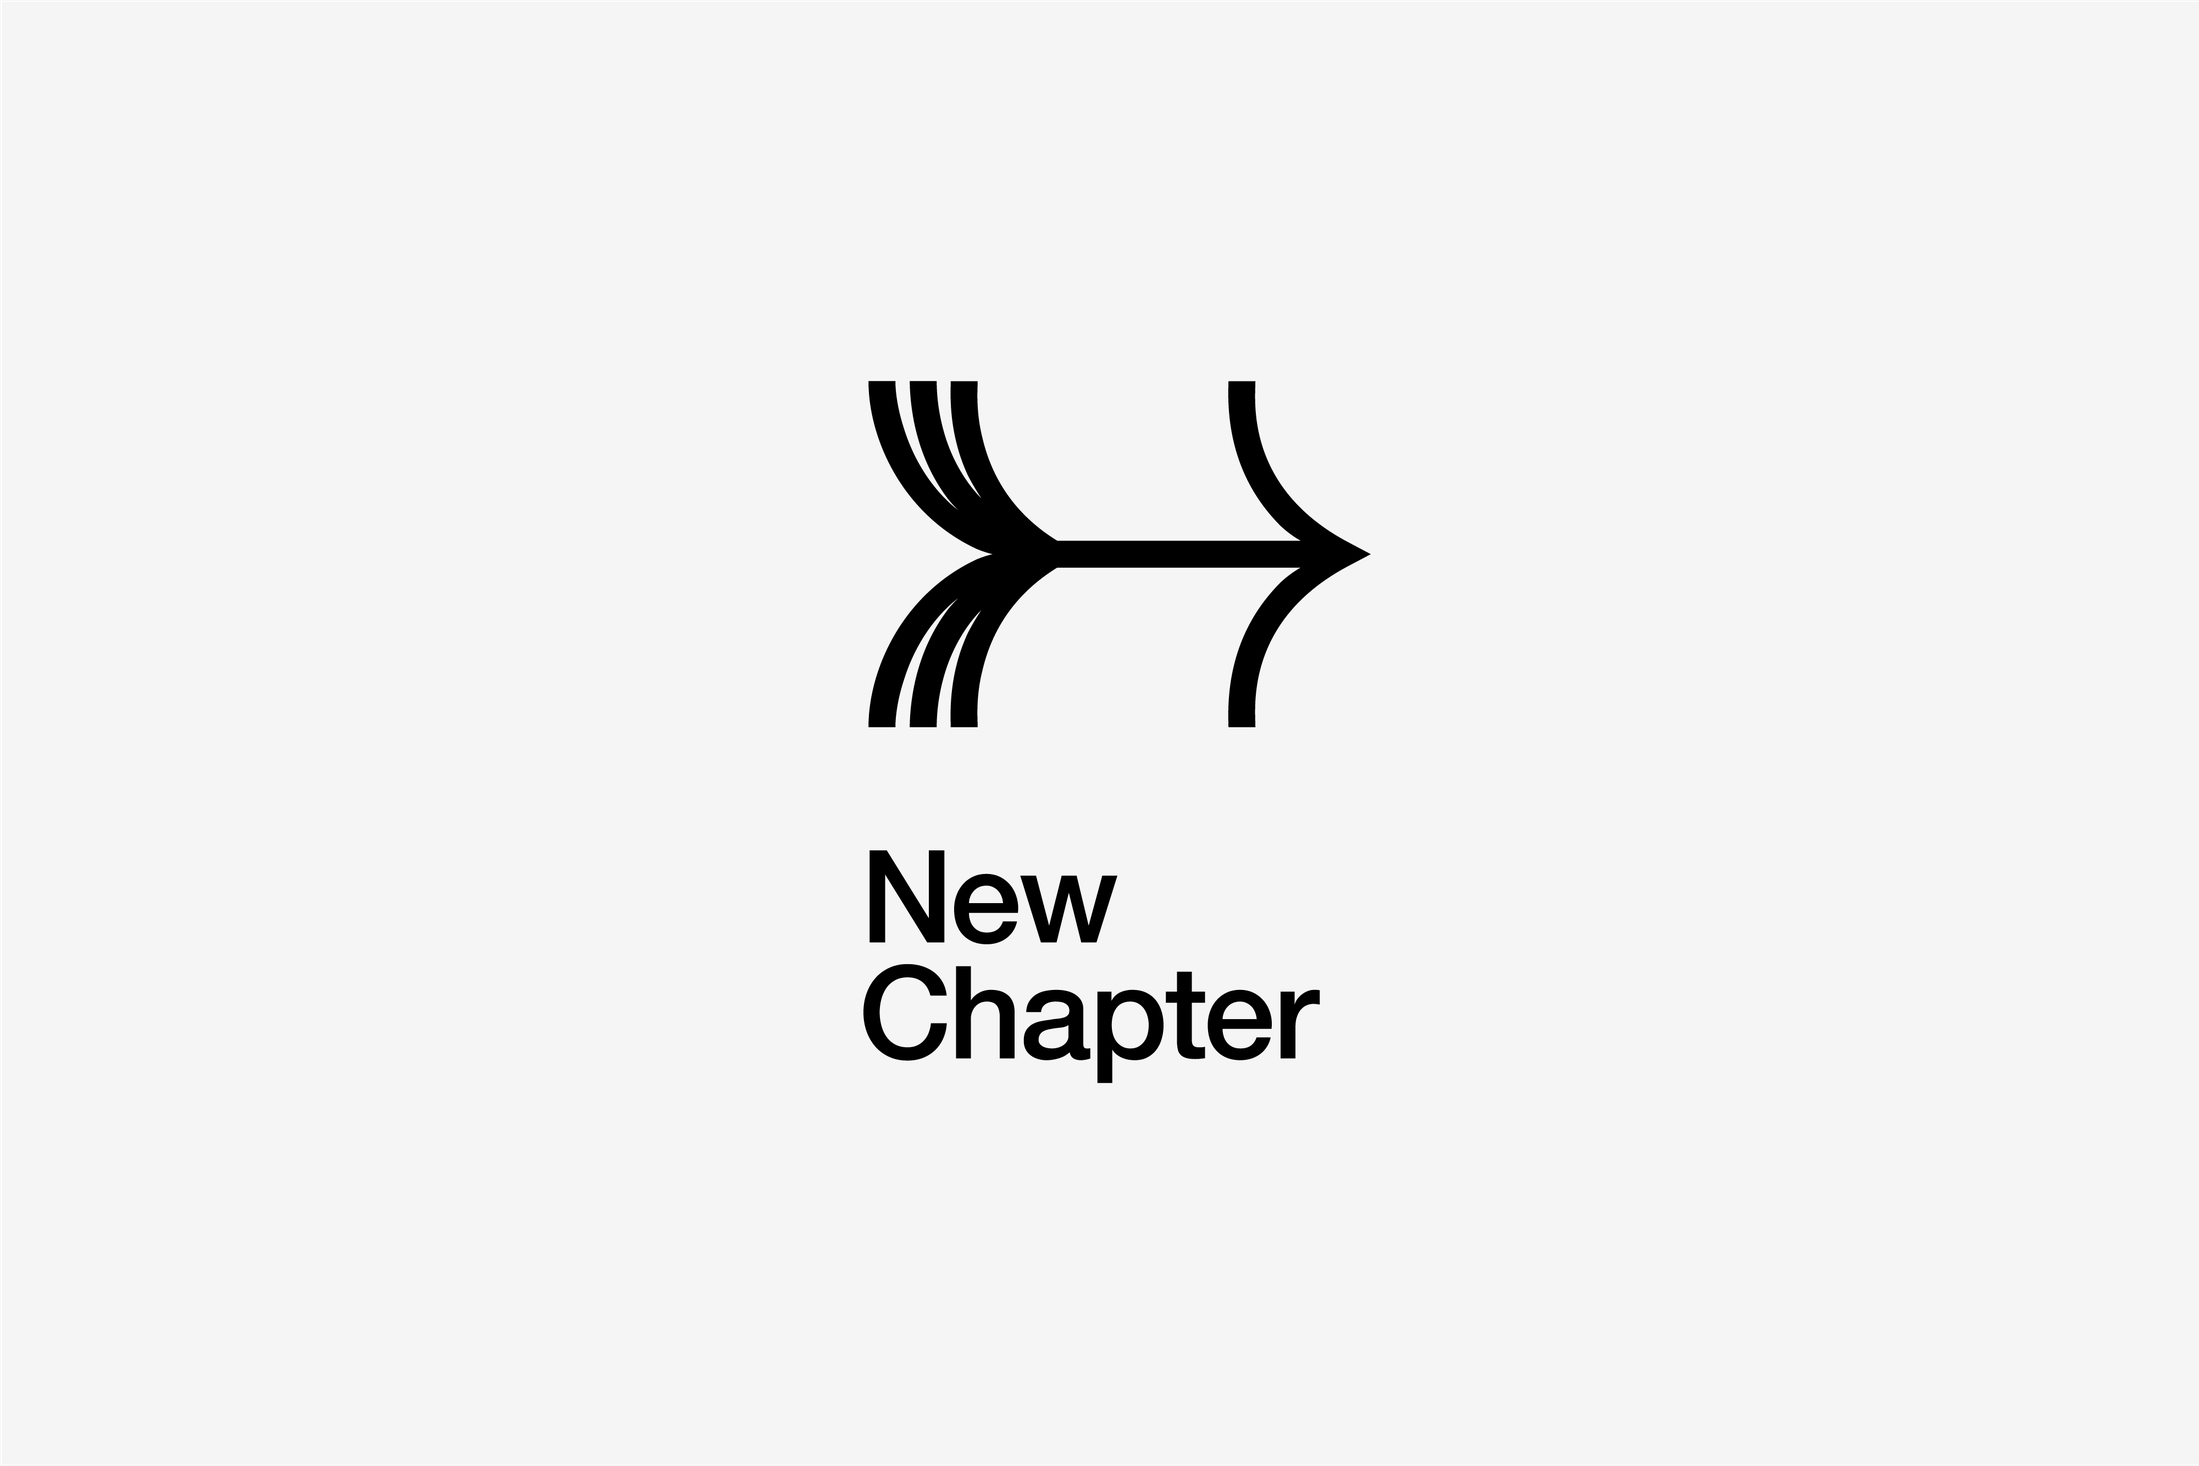 New chapter 1. Ассиметричные логотипы. Логотип Ch. Логотип с асимметричной композицией. Несимметричные логотипы.